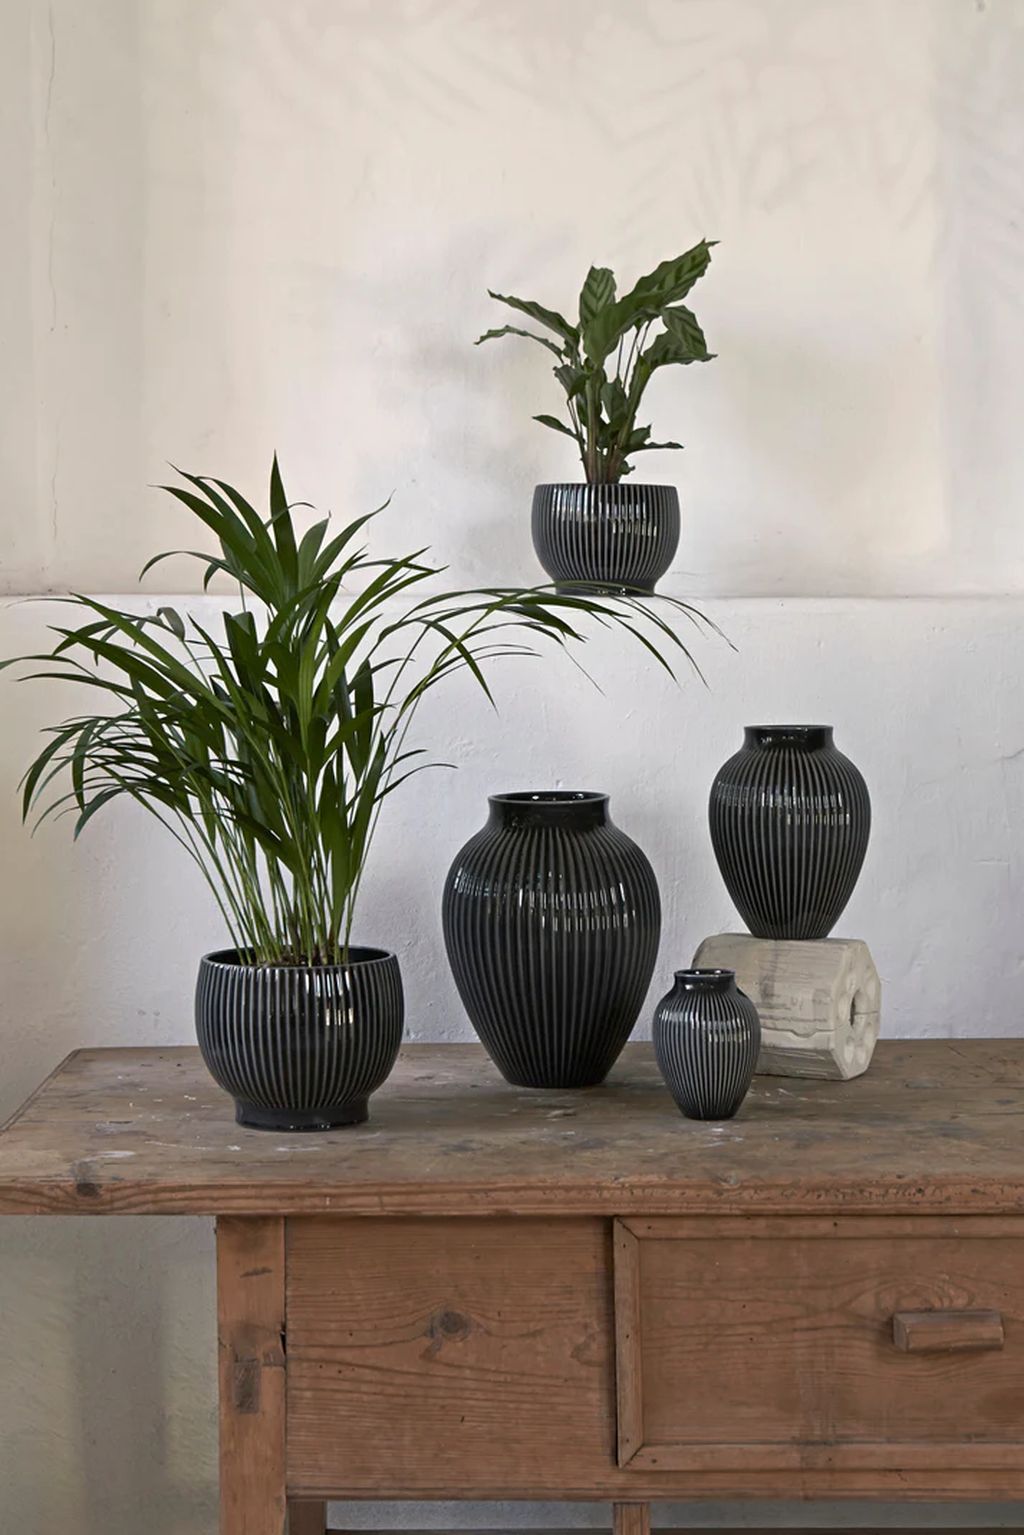 Knabstrup Keramik Flowerpot s koly Ø 14,5 cm, černá